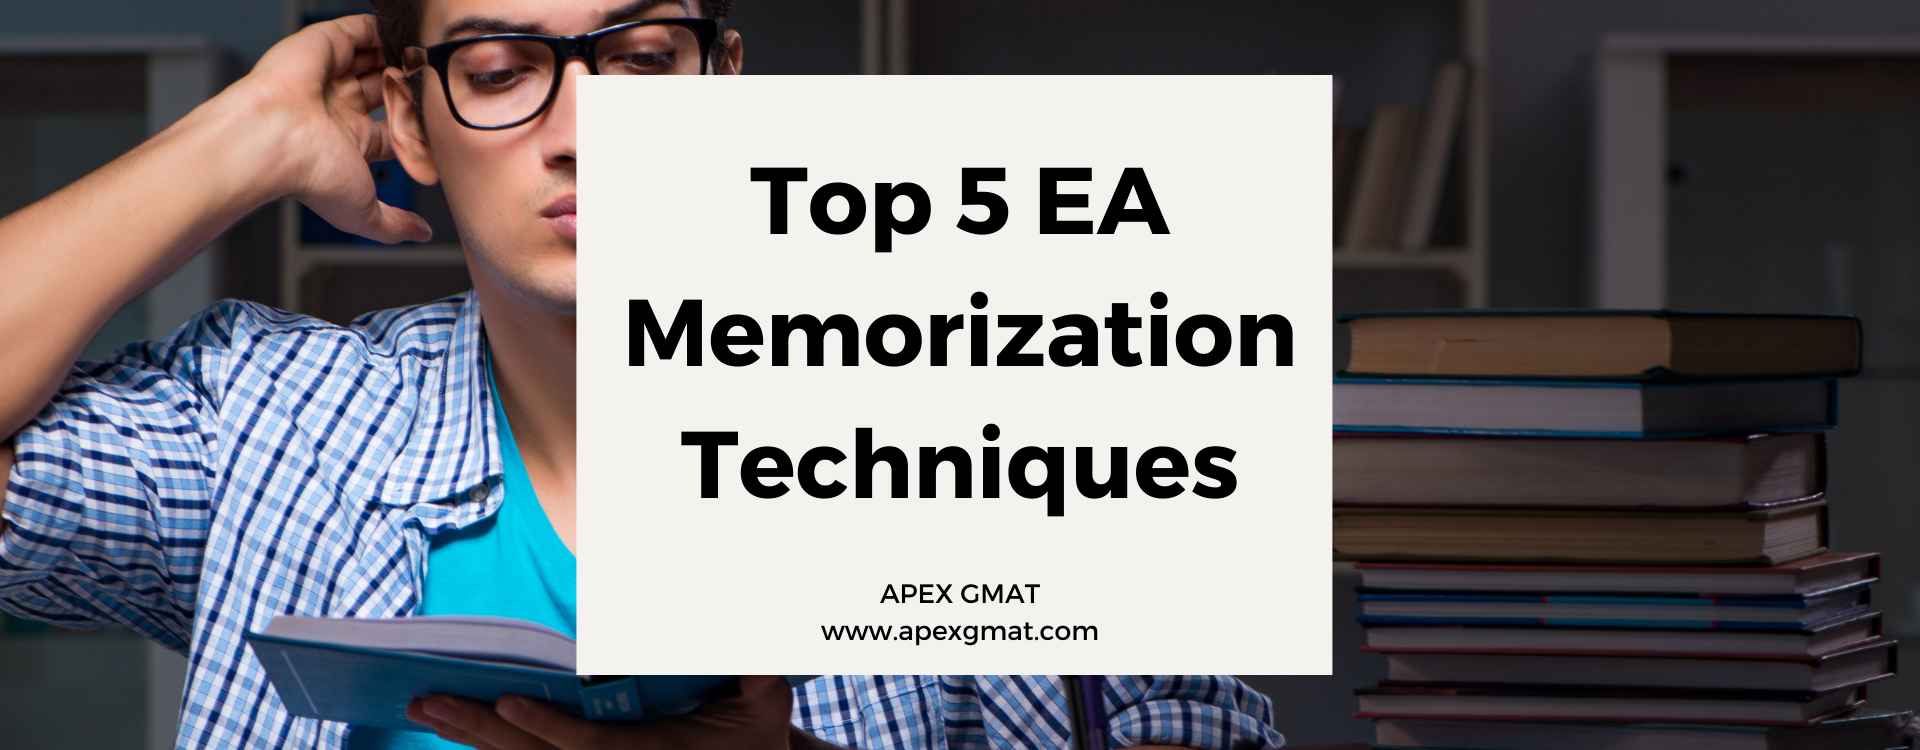 Top 5 EA Memorization Techniques